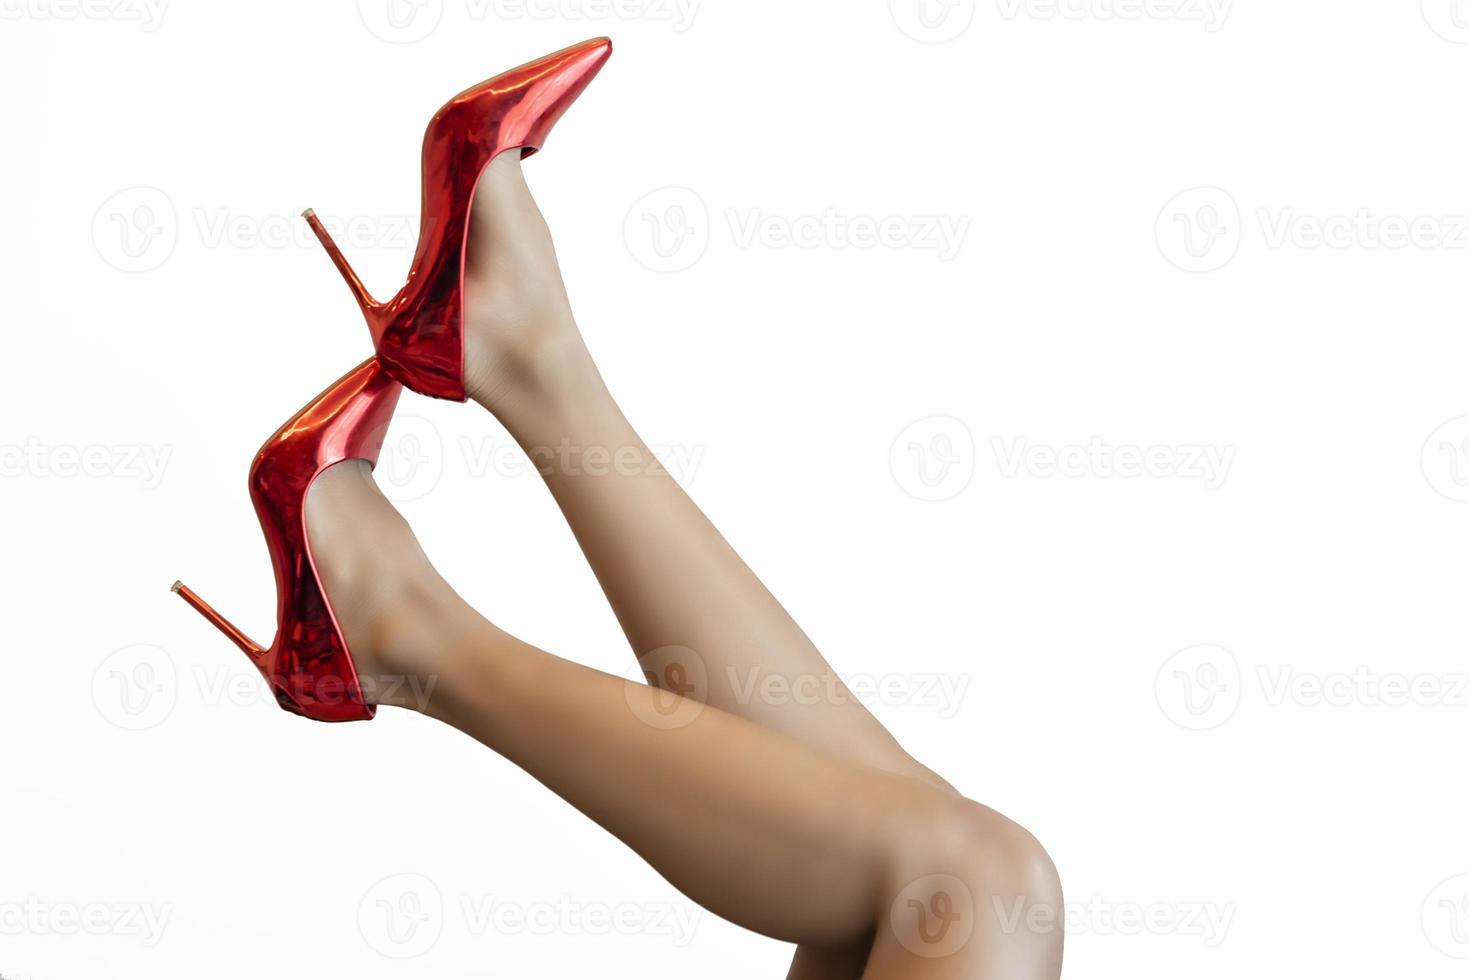 sexiga ben i luften med röda skor foto